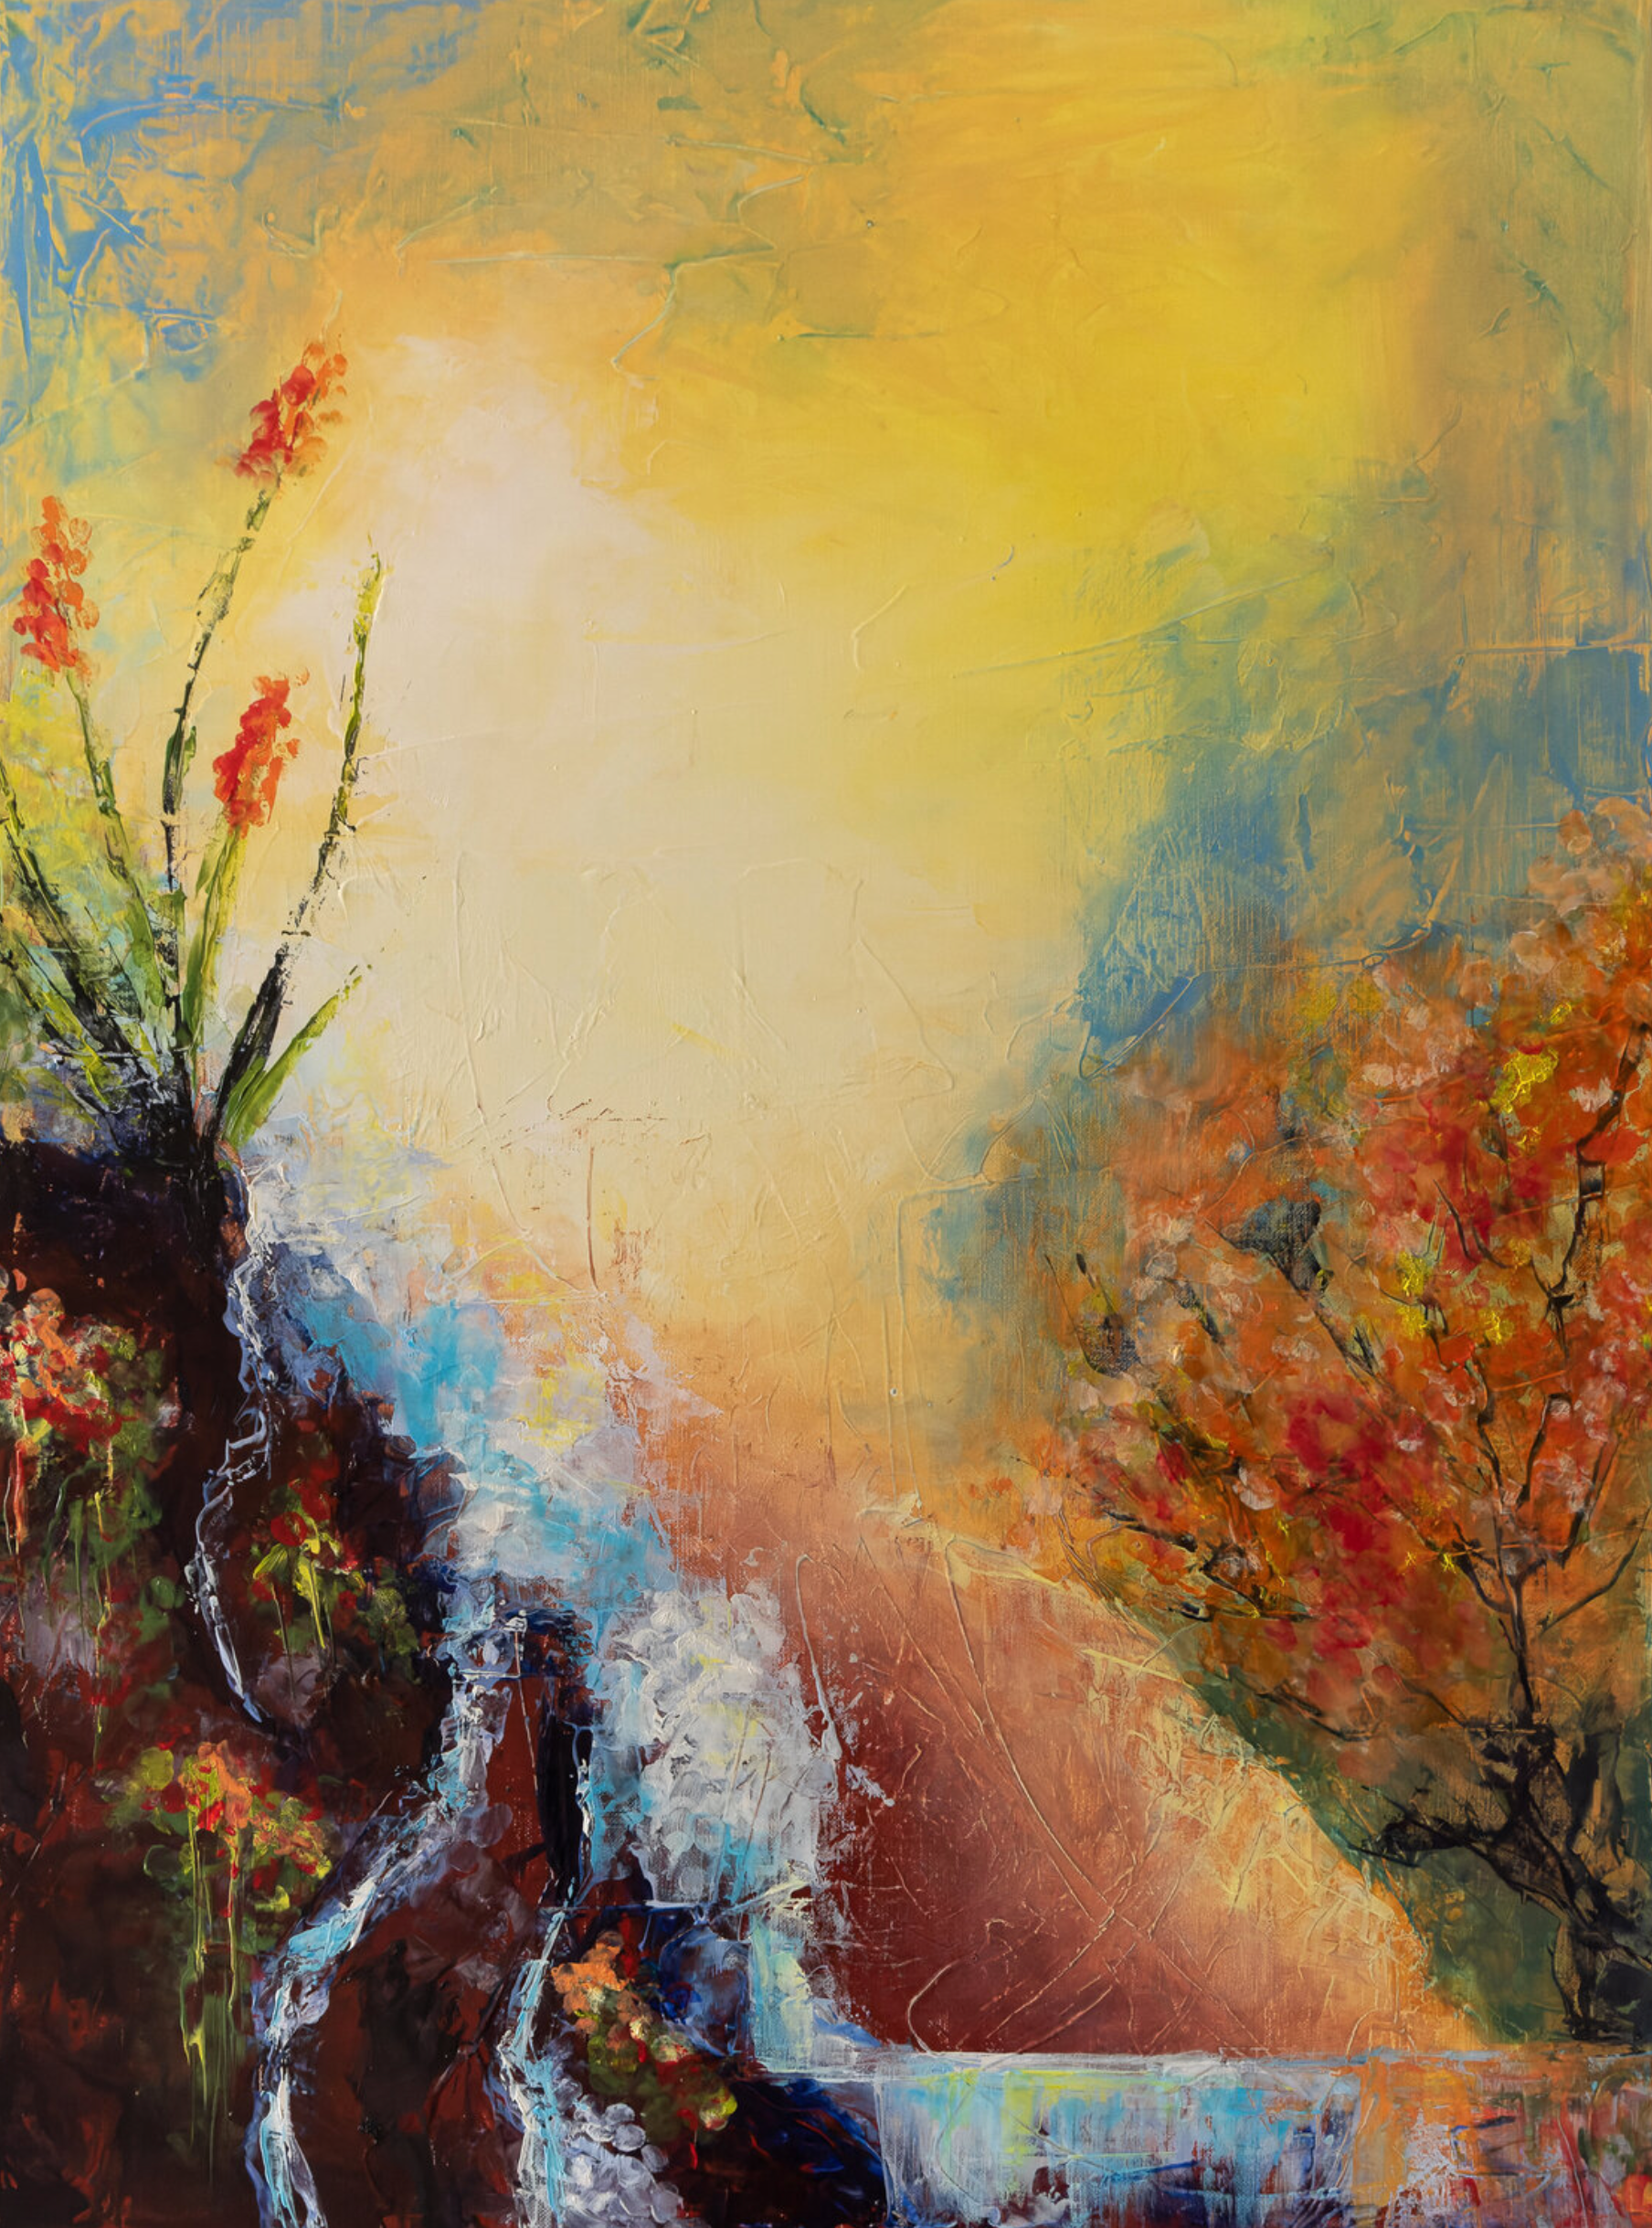 El cuadro abstracto "Lascive" de Françoise Dugourd-Caput representa el paisaje imaginario de una cascada que desciende por una pendiente, acariciando las rocas bordeadas de plantas en flor y a juego con un árbol en flor, desprendiendo una atmósfera de sensualidad.